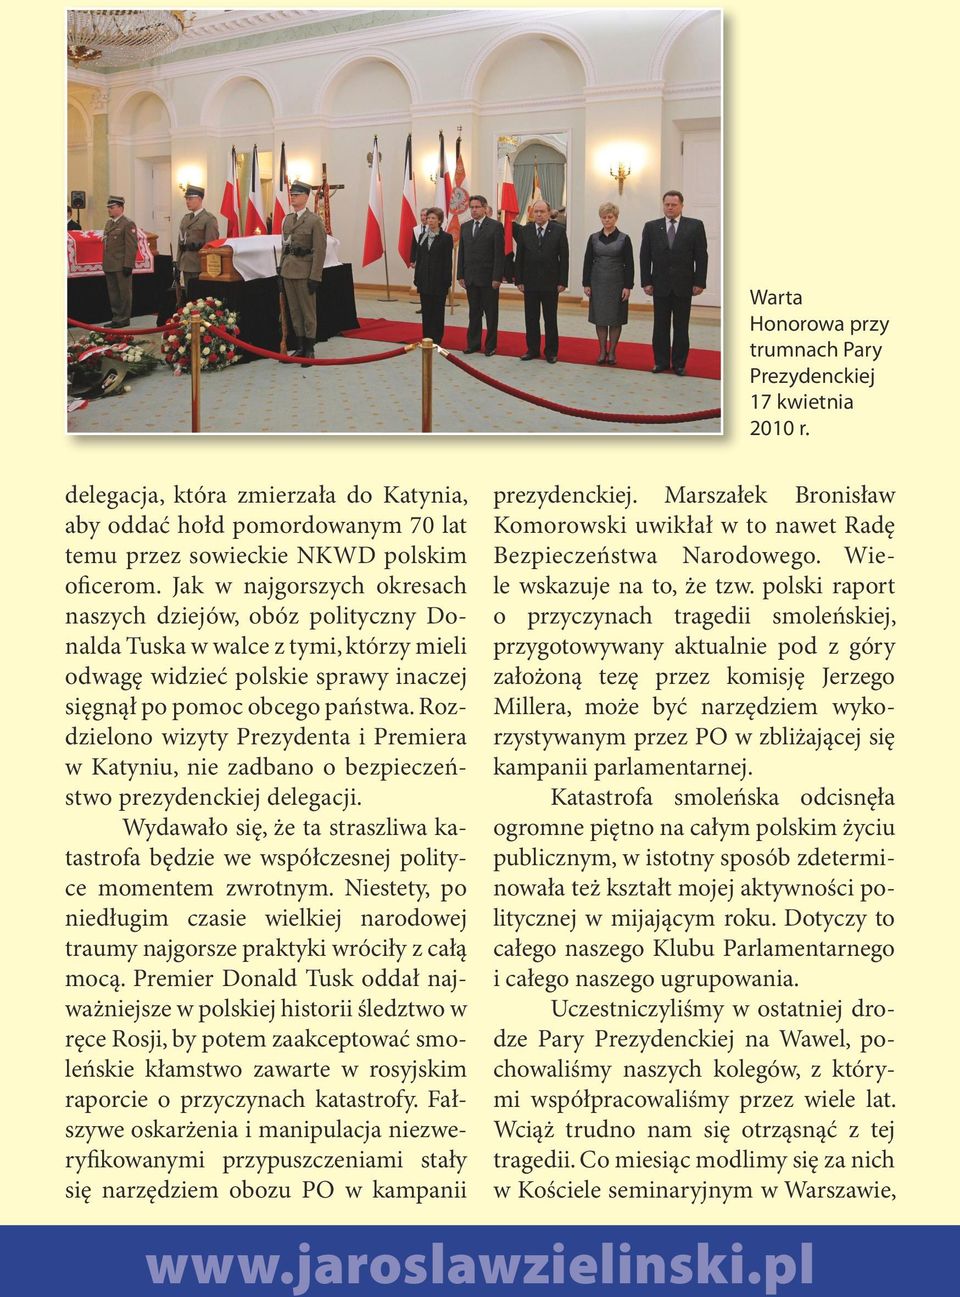 Rozdzielono wizyty Prezydenta i Premiera w Katyniu, nie zadbano o bezpieczeństwo prezydenckiej delegacji. Wydawało się, że ta straszliwa katastrofa będzie we współczesnej polityce momentem zwrotnym.